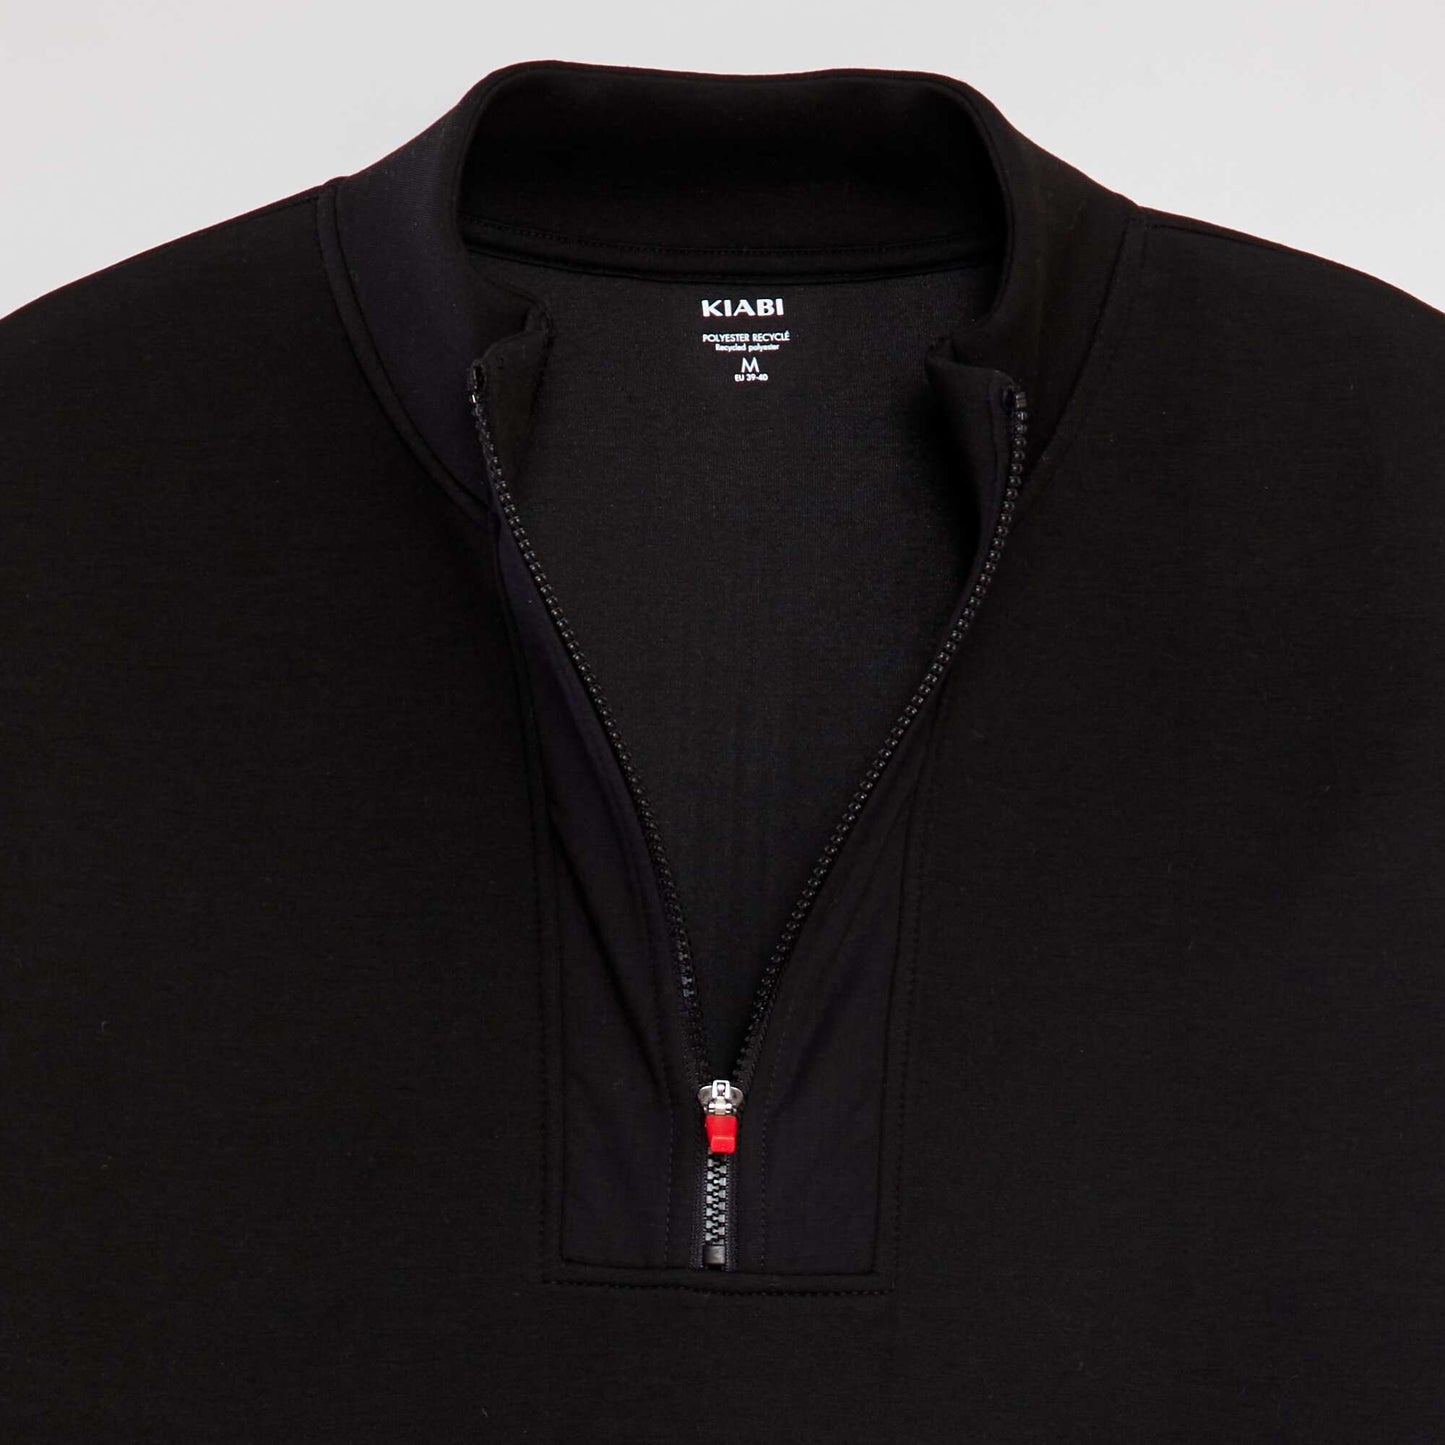 Neoprene sweatshirt with zip-up collar BLACK